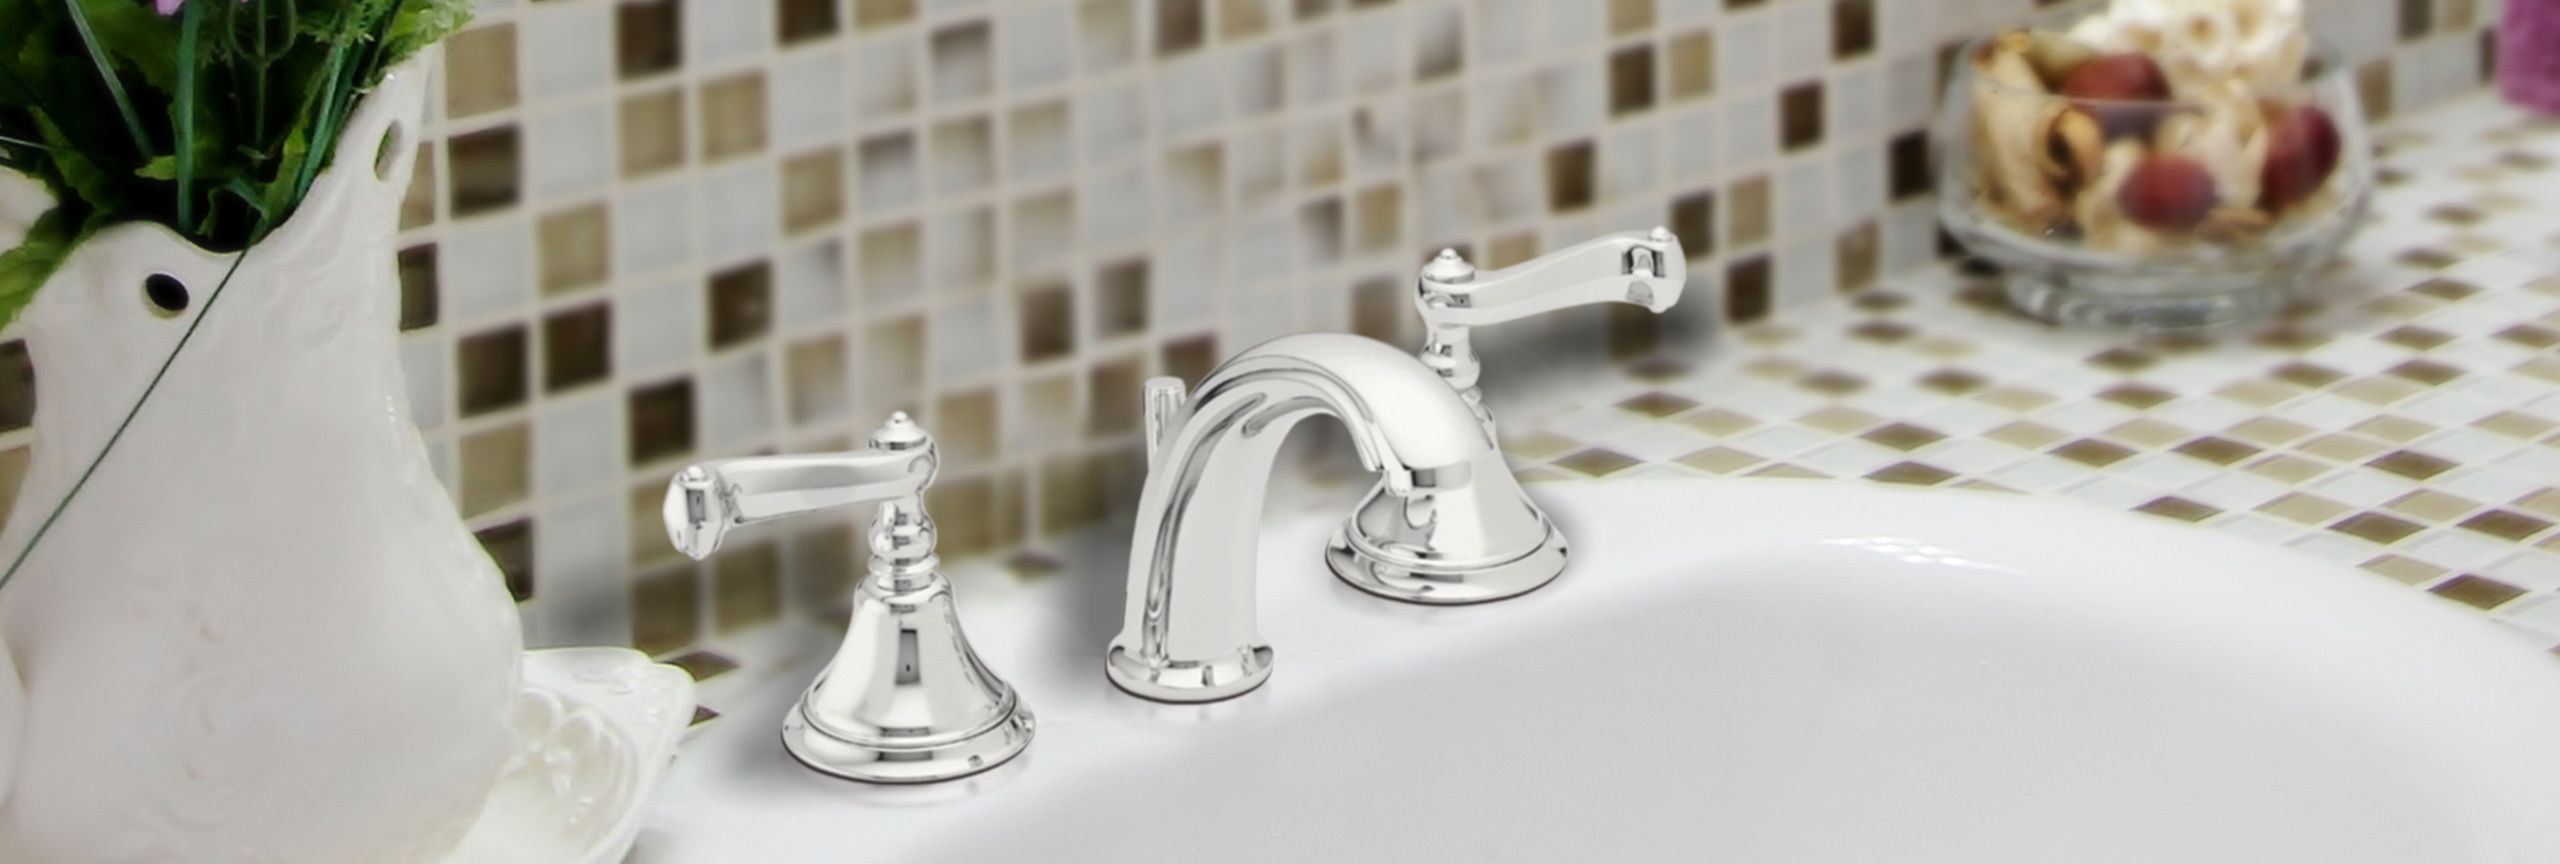 bathroom series camarillo widespread faucet on sink